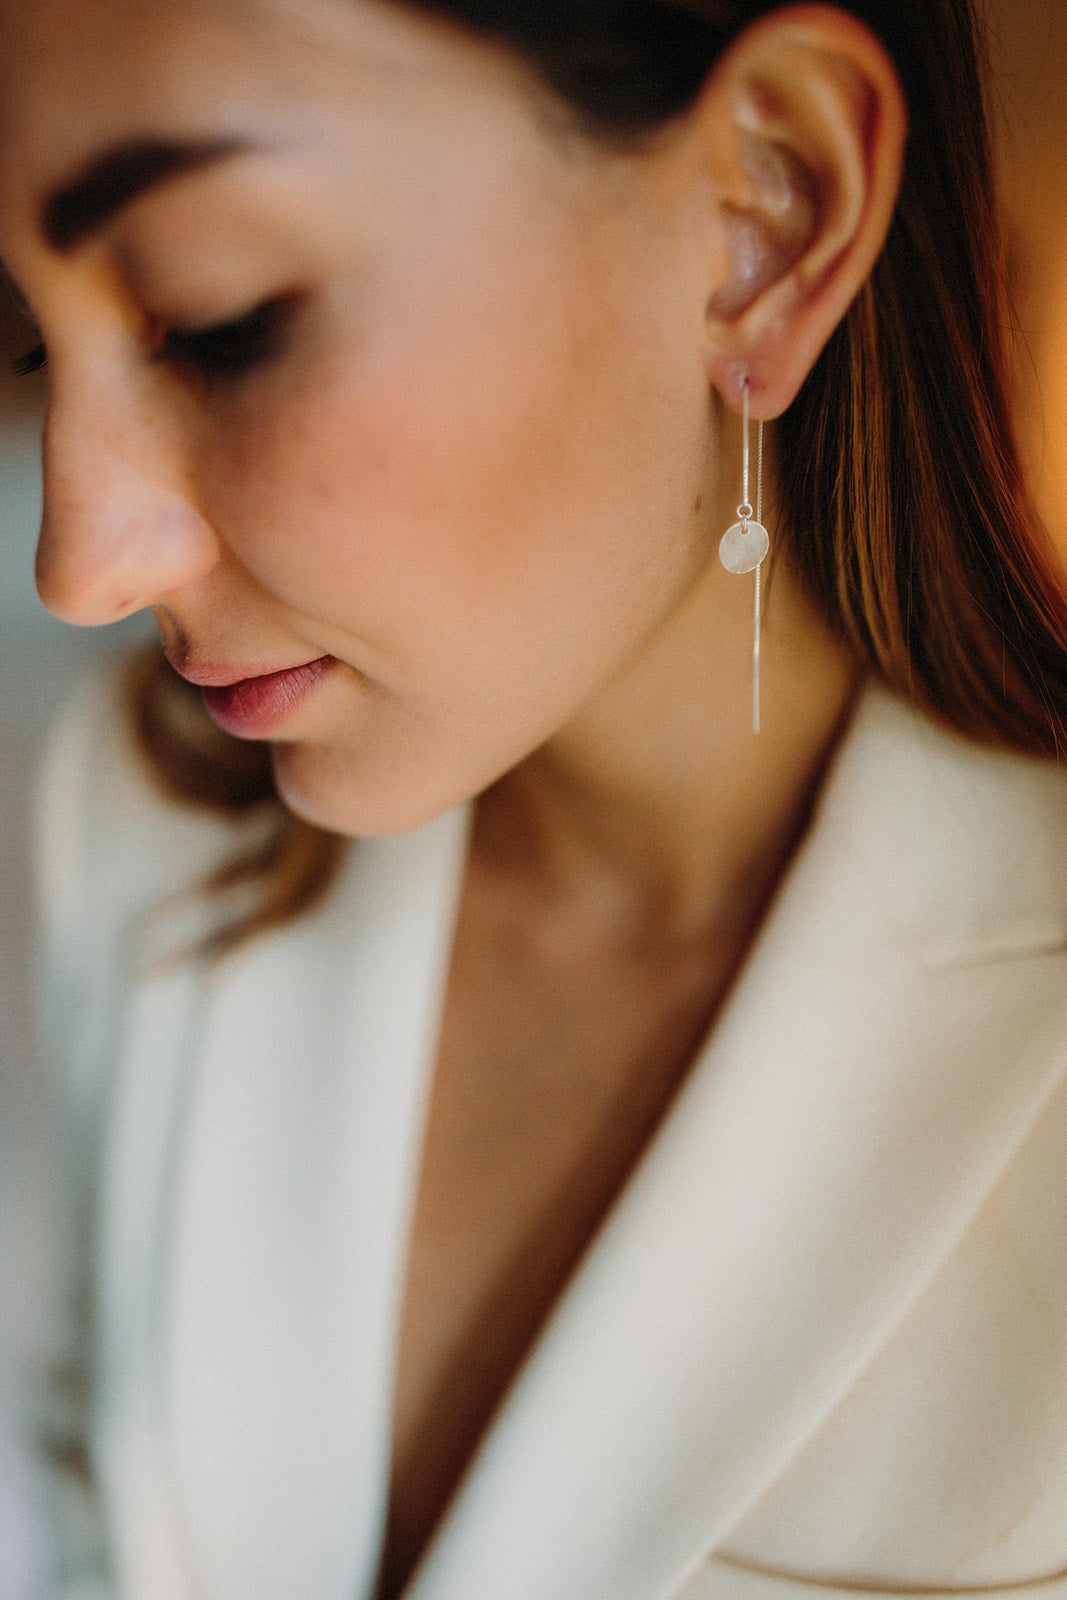 mariée portant des boucles d'oreilles avec un rond transparent et une attache en chaine argentée